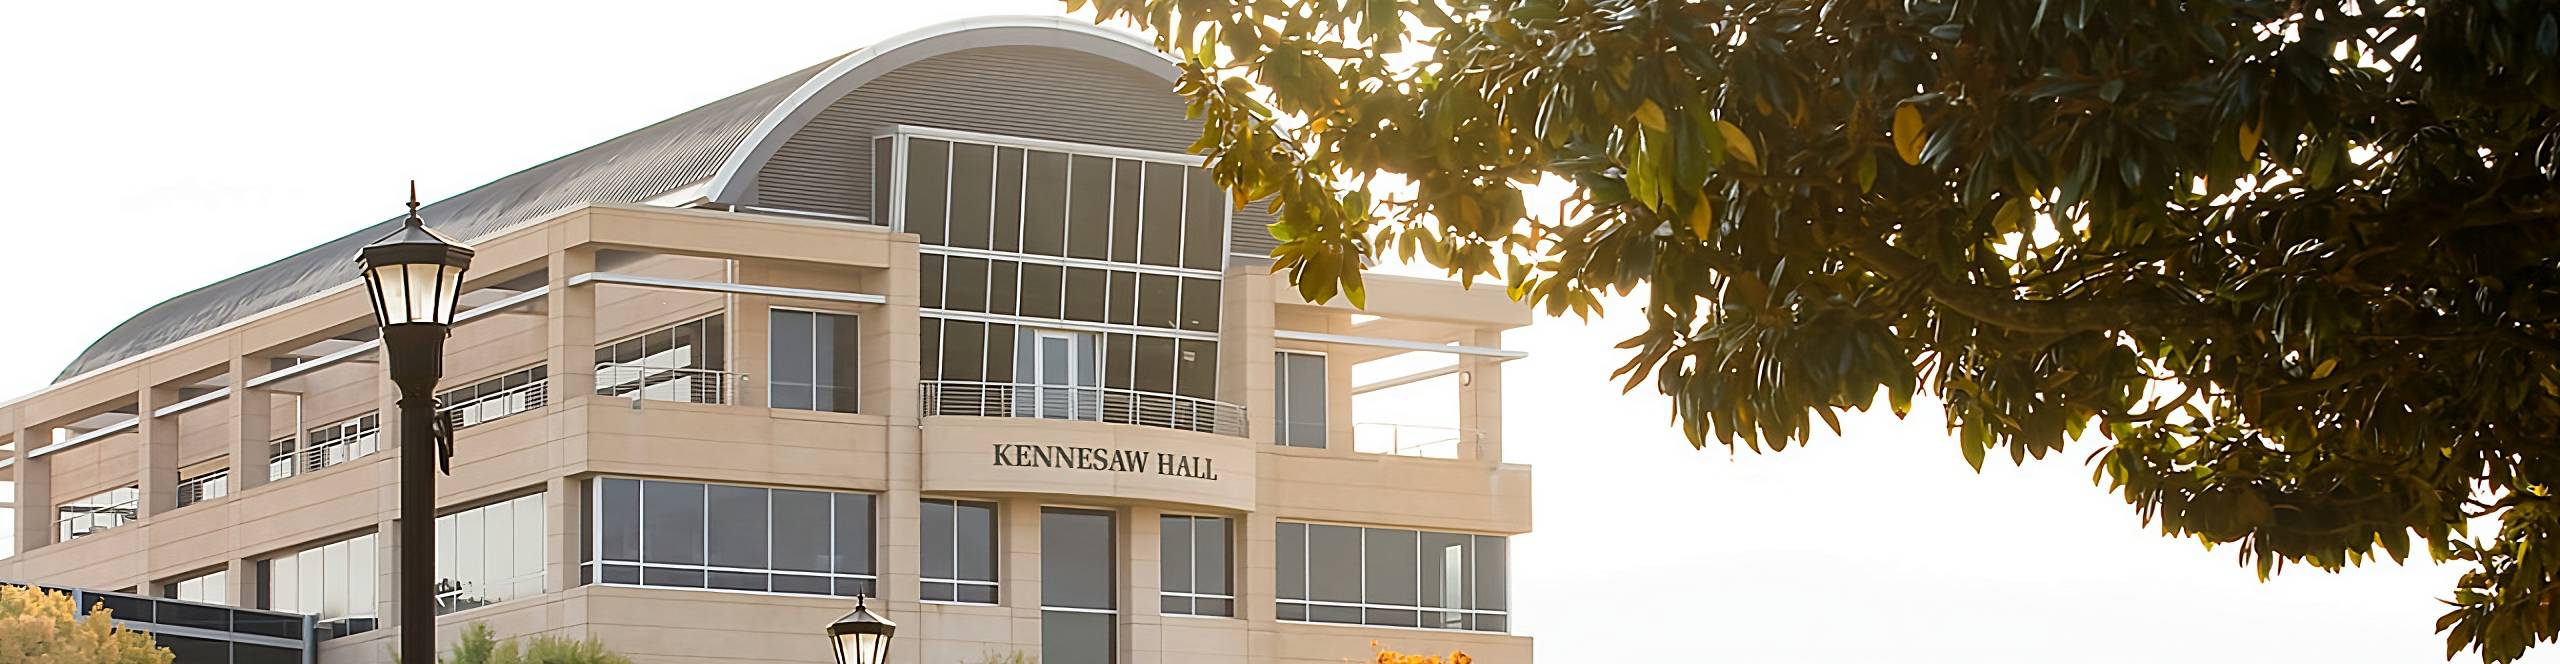 Kennesaw Hall